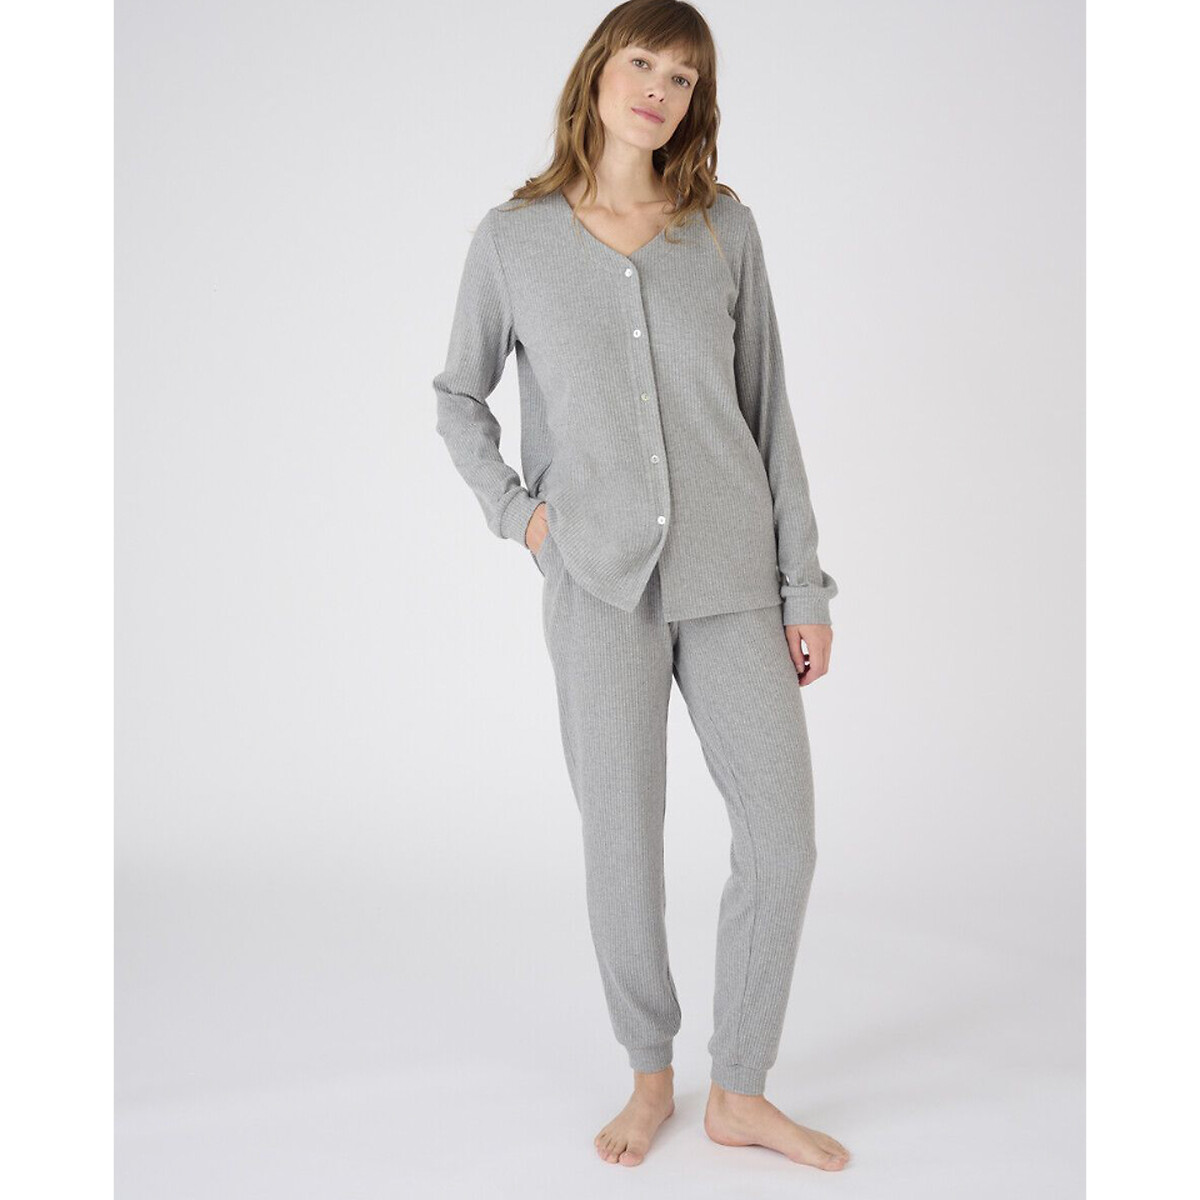 Комплект пижамный, Thermolactyl La Redoute L серый комплект пижамный из жаккарда la redoute xs синий